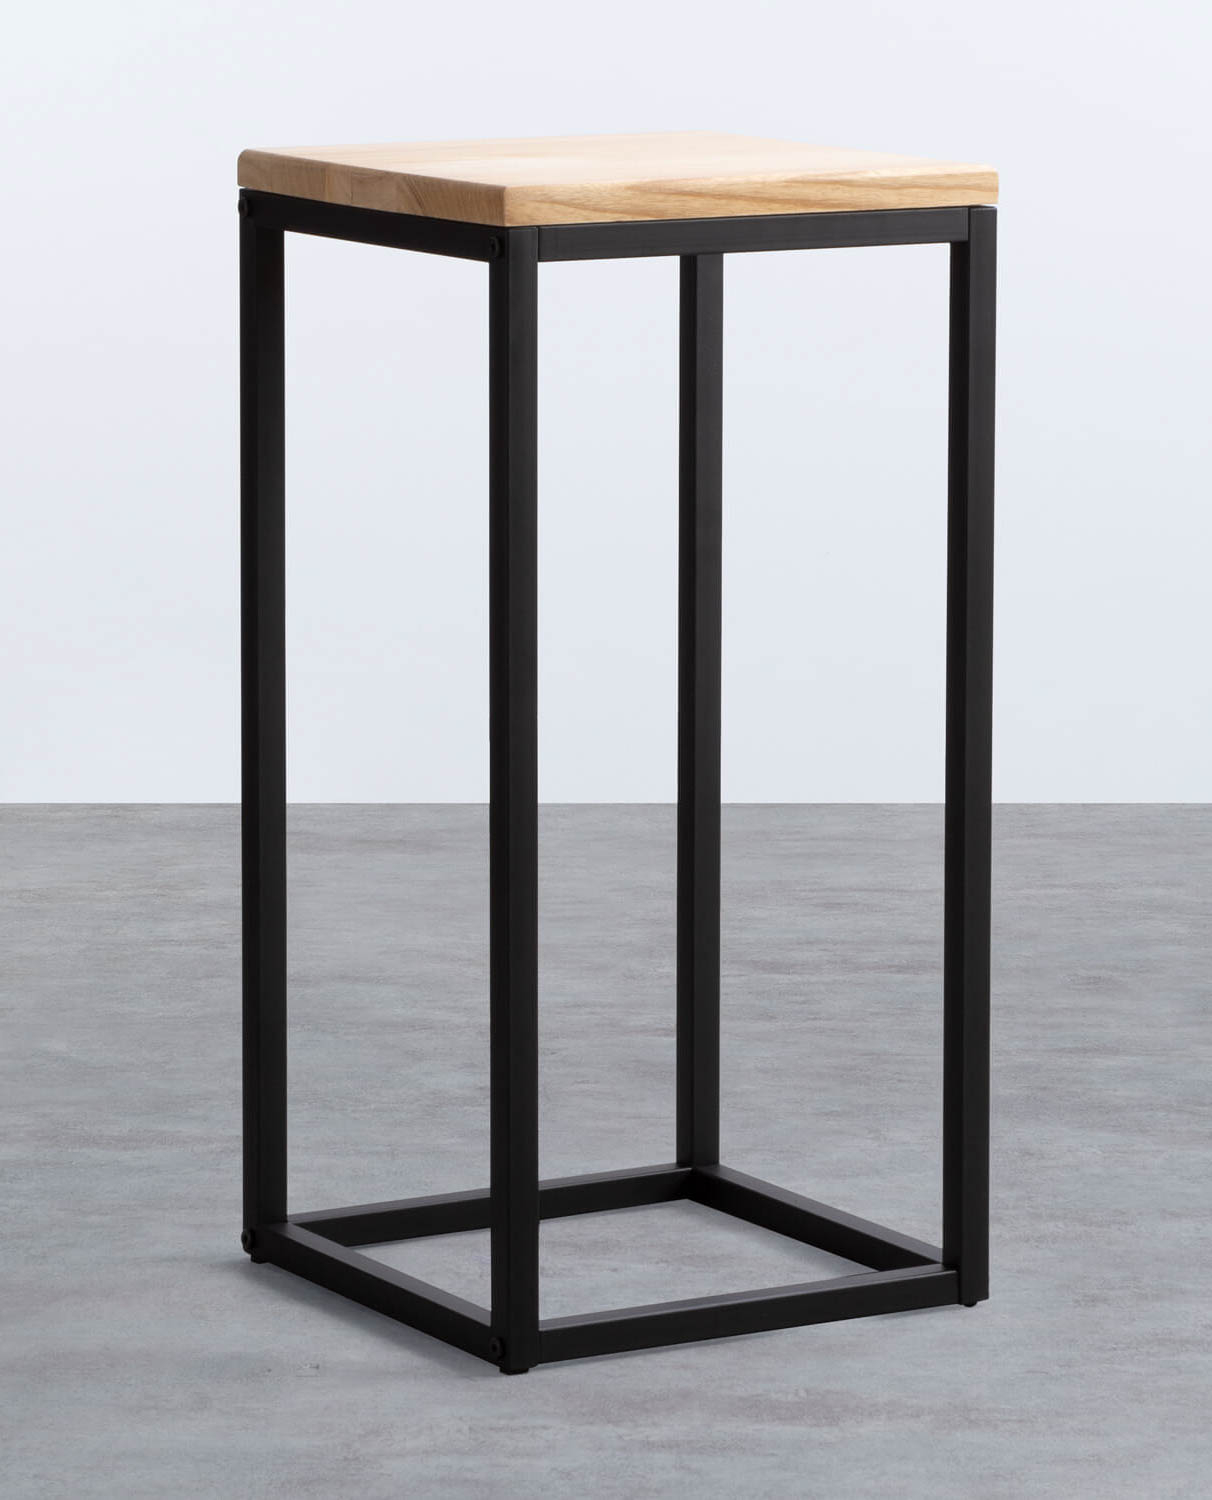 Beistelltisch Quadratisch aus Holz und Metall (30x30 cm) Ferro, Galeriebild 1